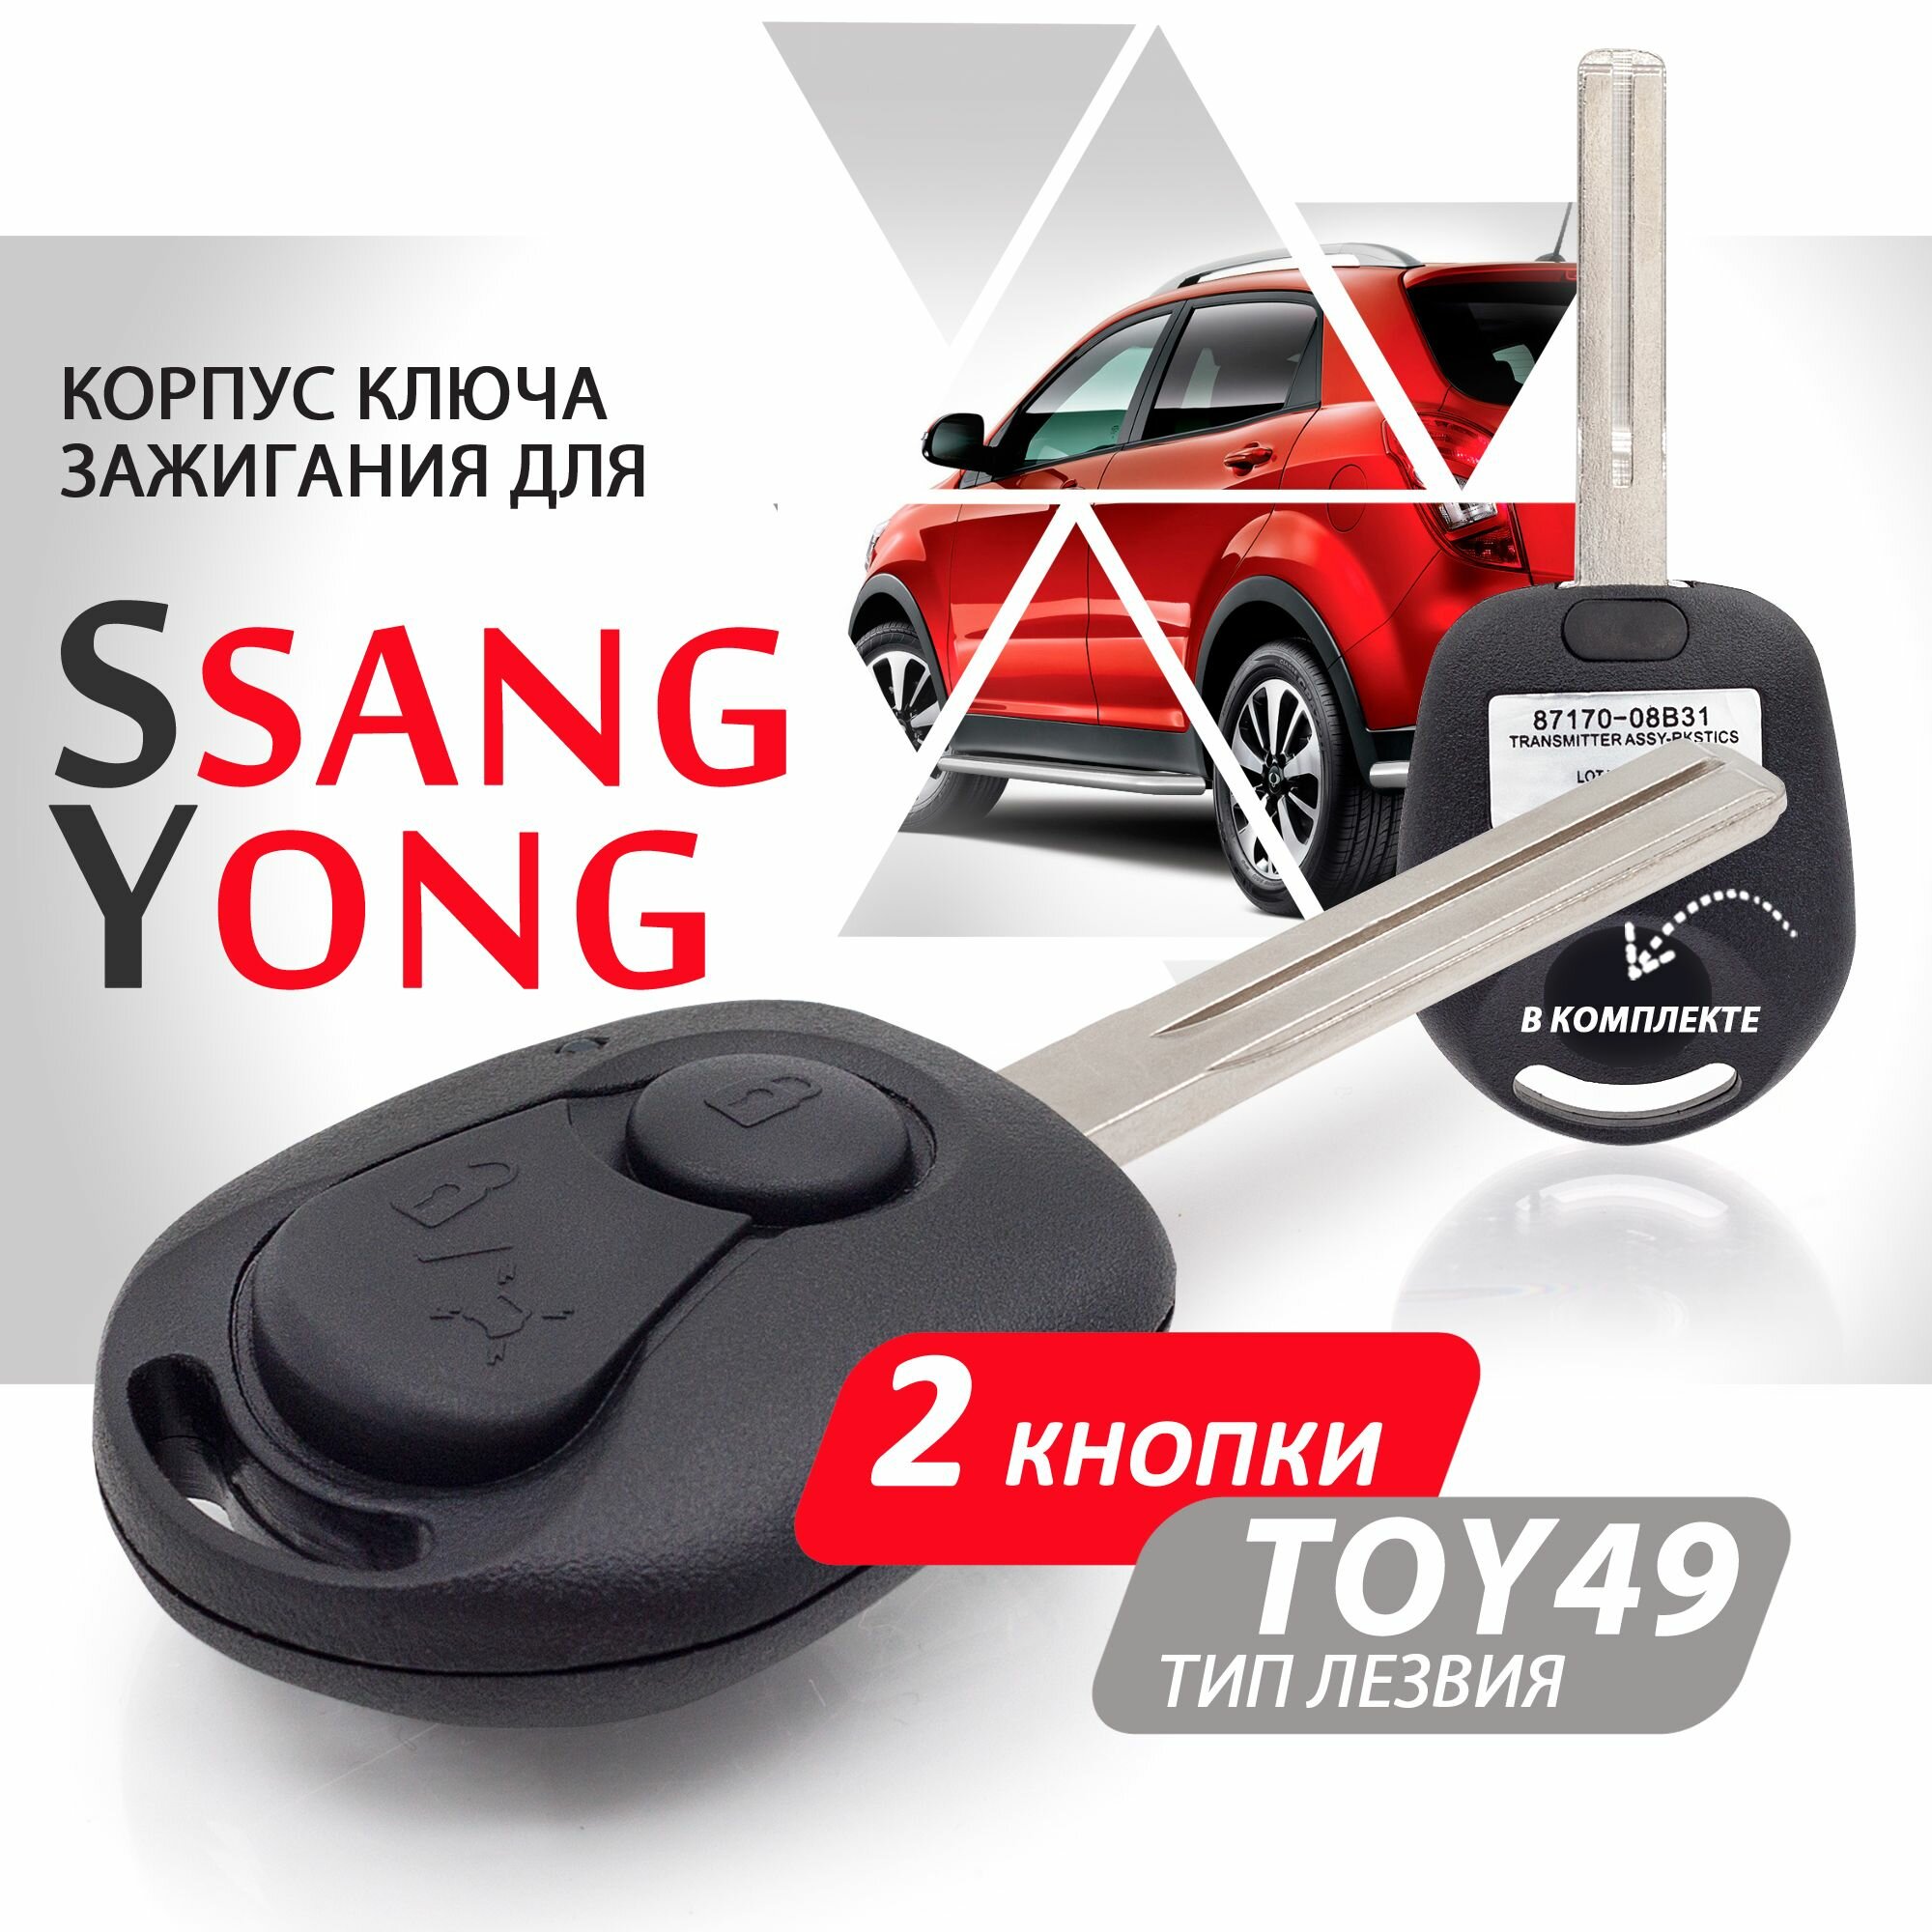 Корпус ключа зажигания для SsangYong (2 кнопки лезвие TOY49) / ключ автомобильный ссанг йонг